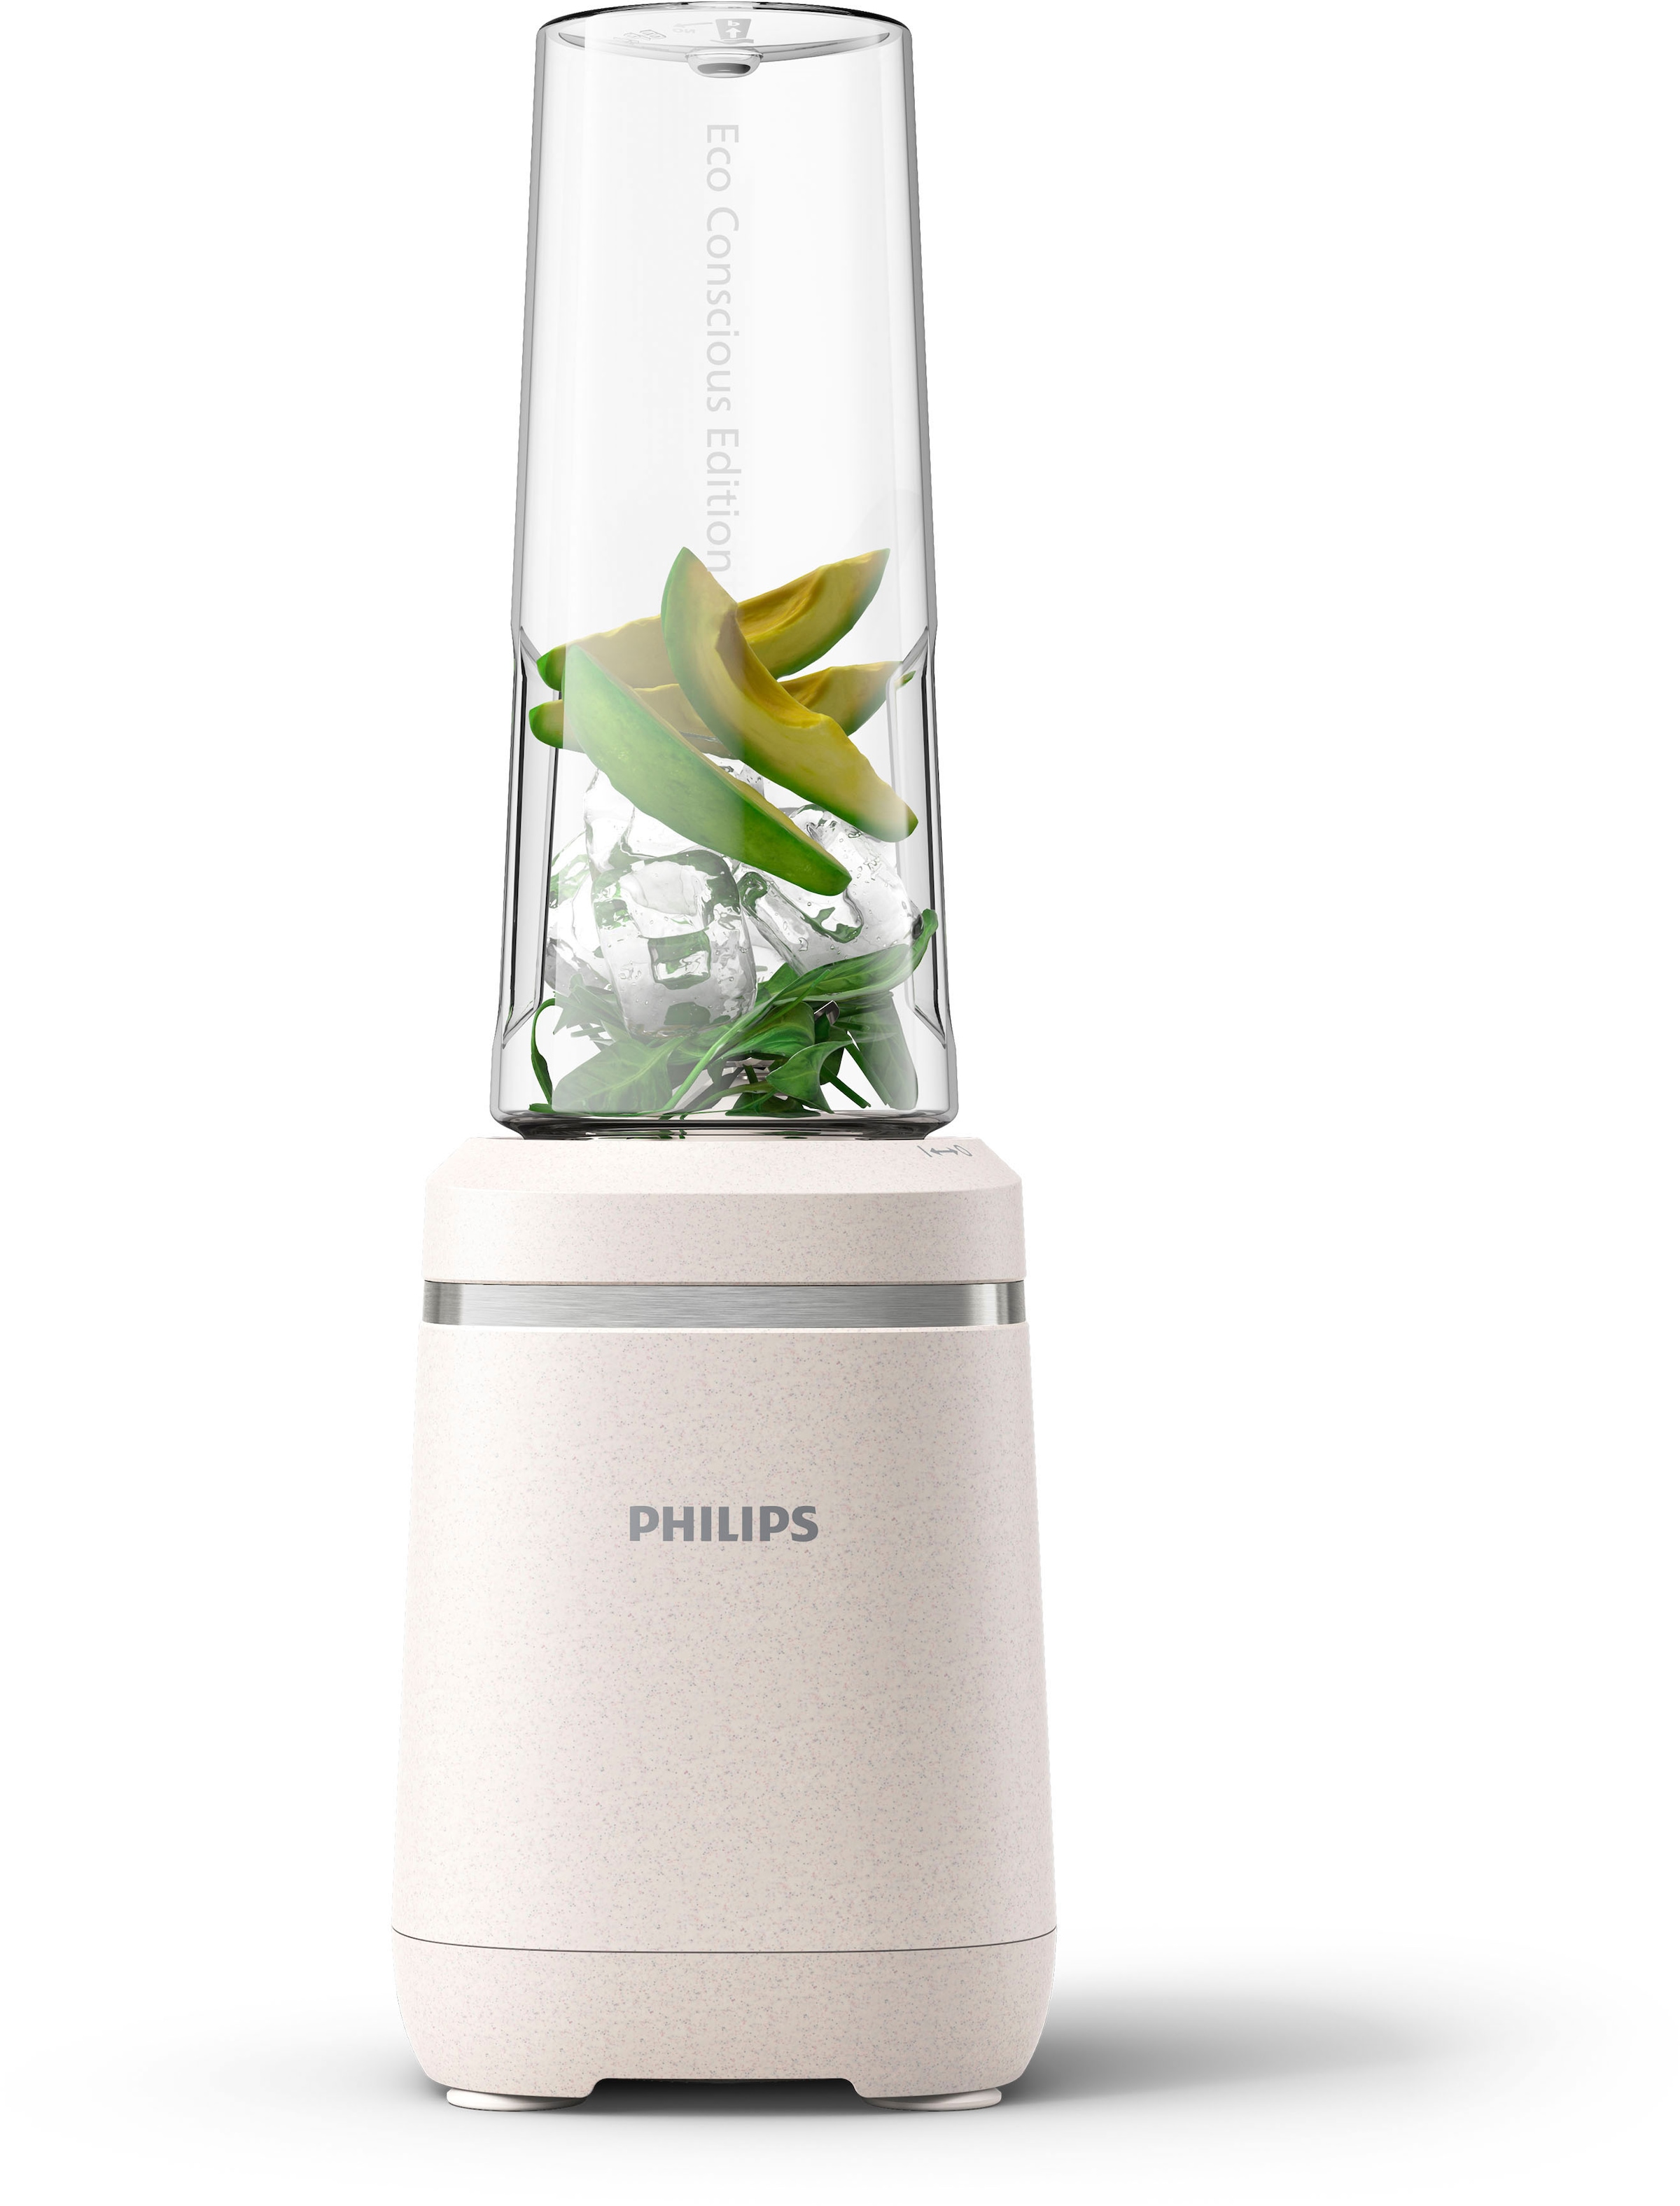 Philips Standmixer »HR2500/00 Eco Conscious Collection, mit ProBlend Technologie,«, 350 W, 600ml-Tritan-Becher, aus biobasierter Kunststoff; Seidenweiß matt